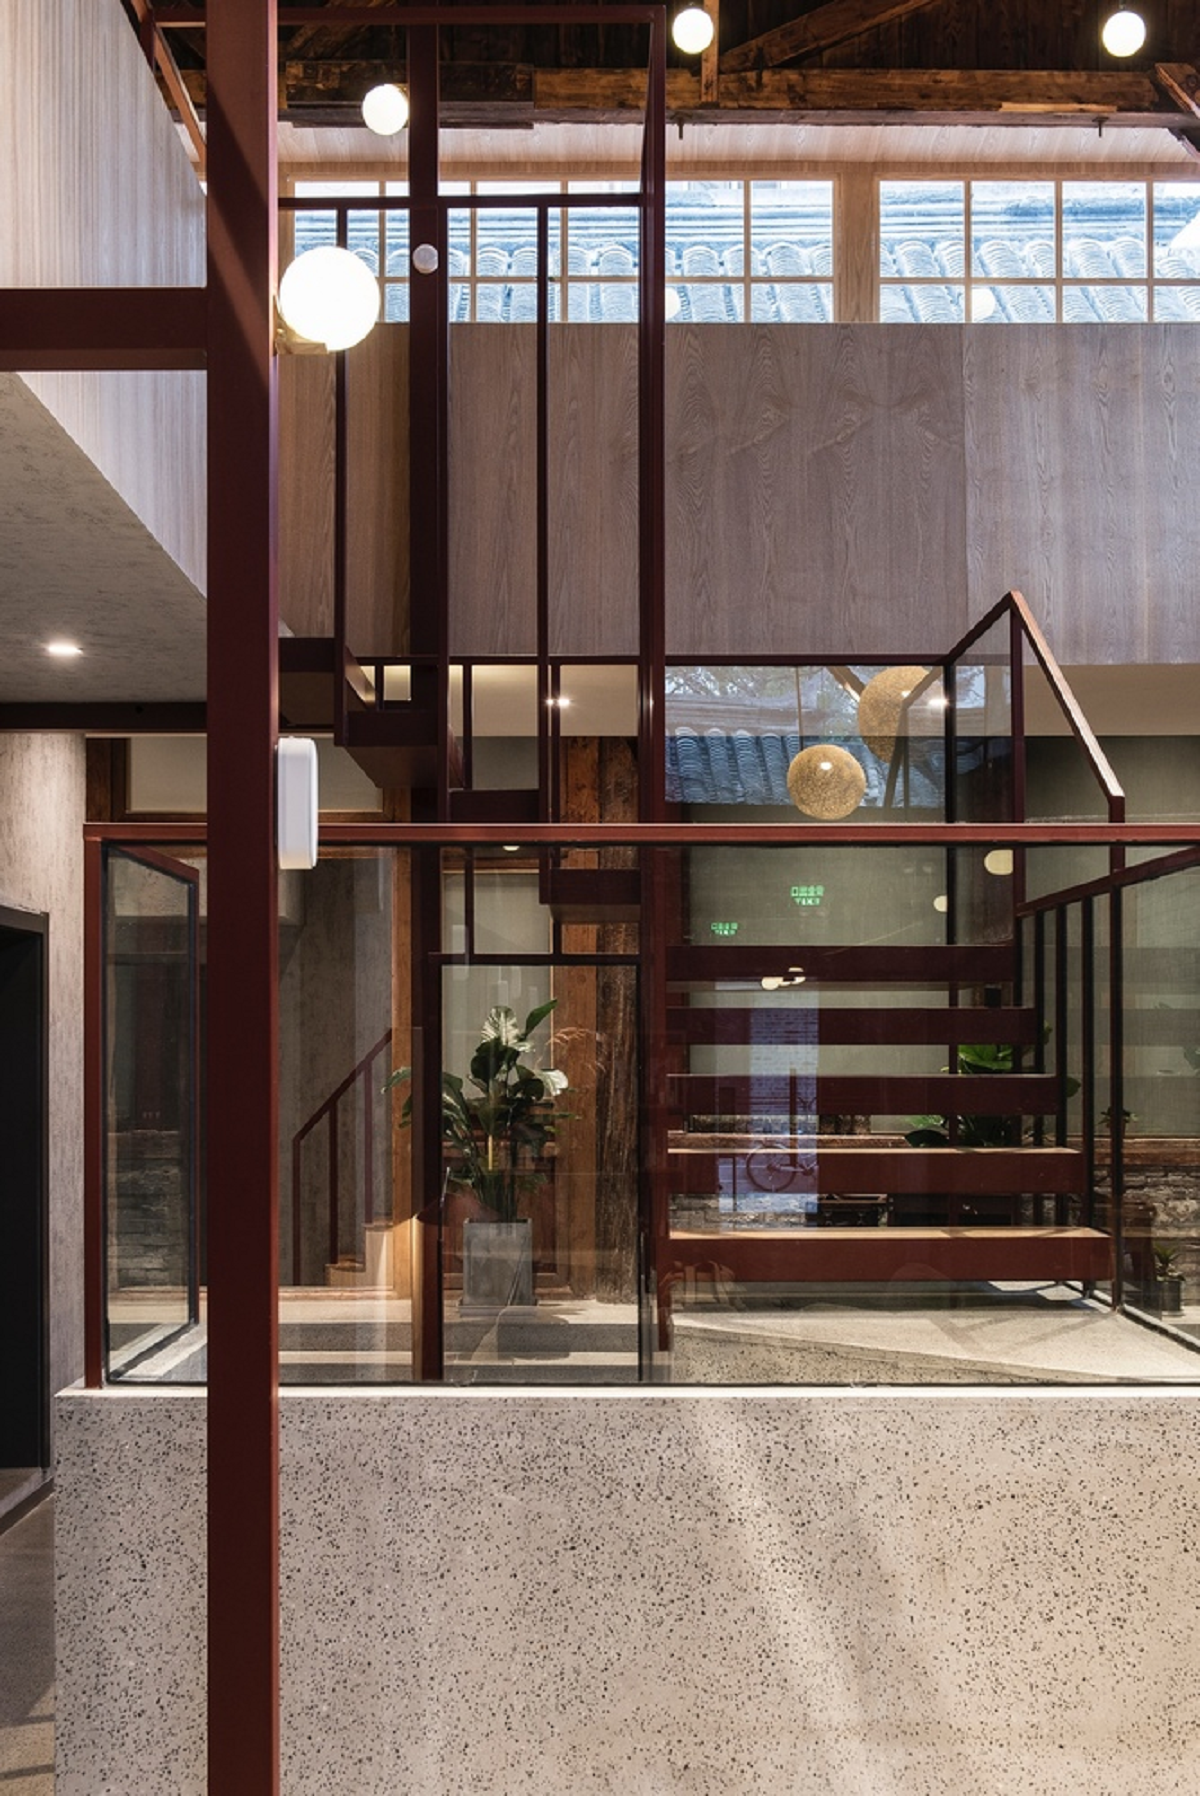 Dự án cải tạo khách sạn Well Well Well - Khi kiến trúc truyền thống chuyển mình dưới hơi thở đương đại | Fon Studio